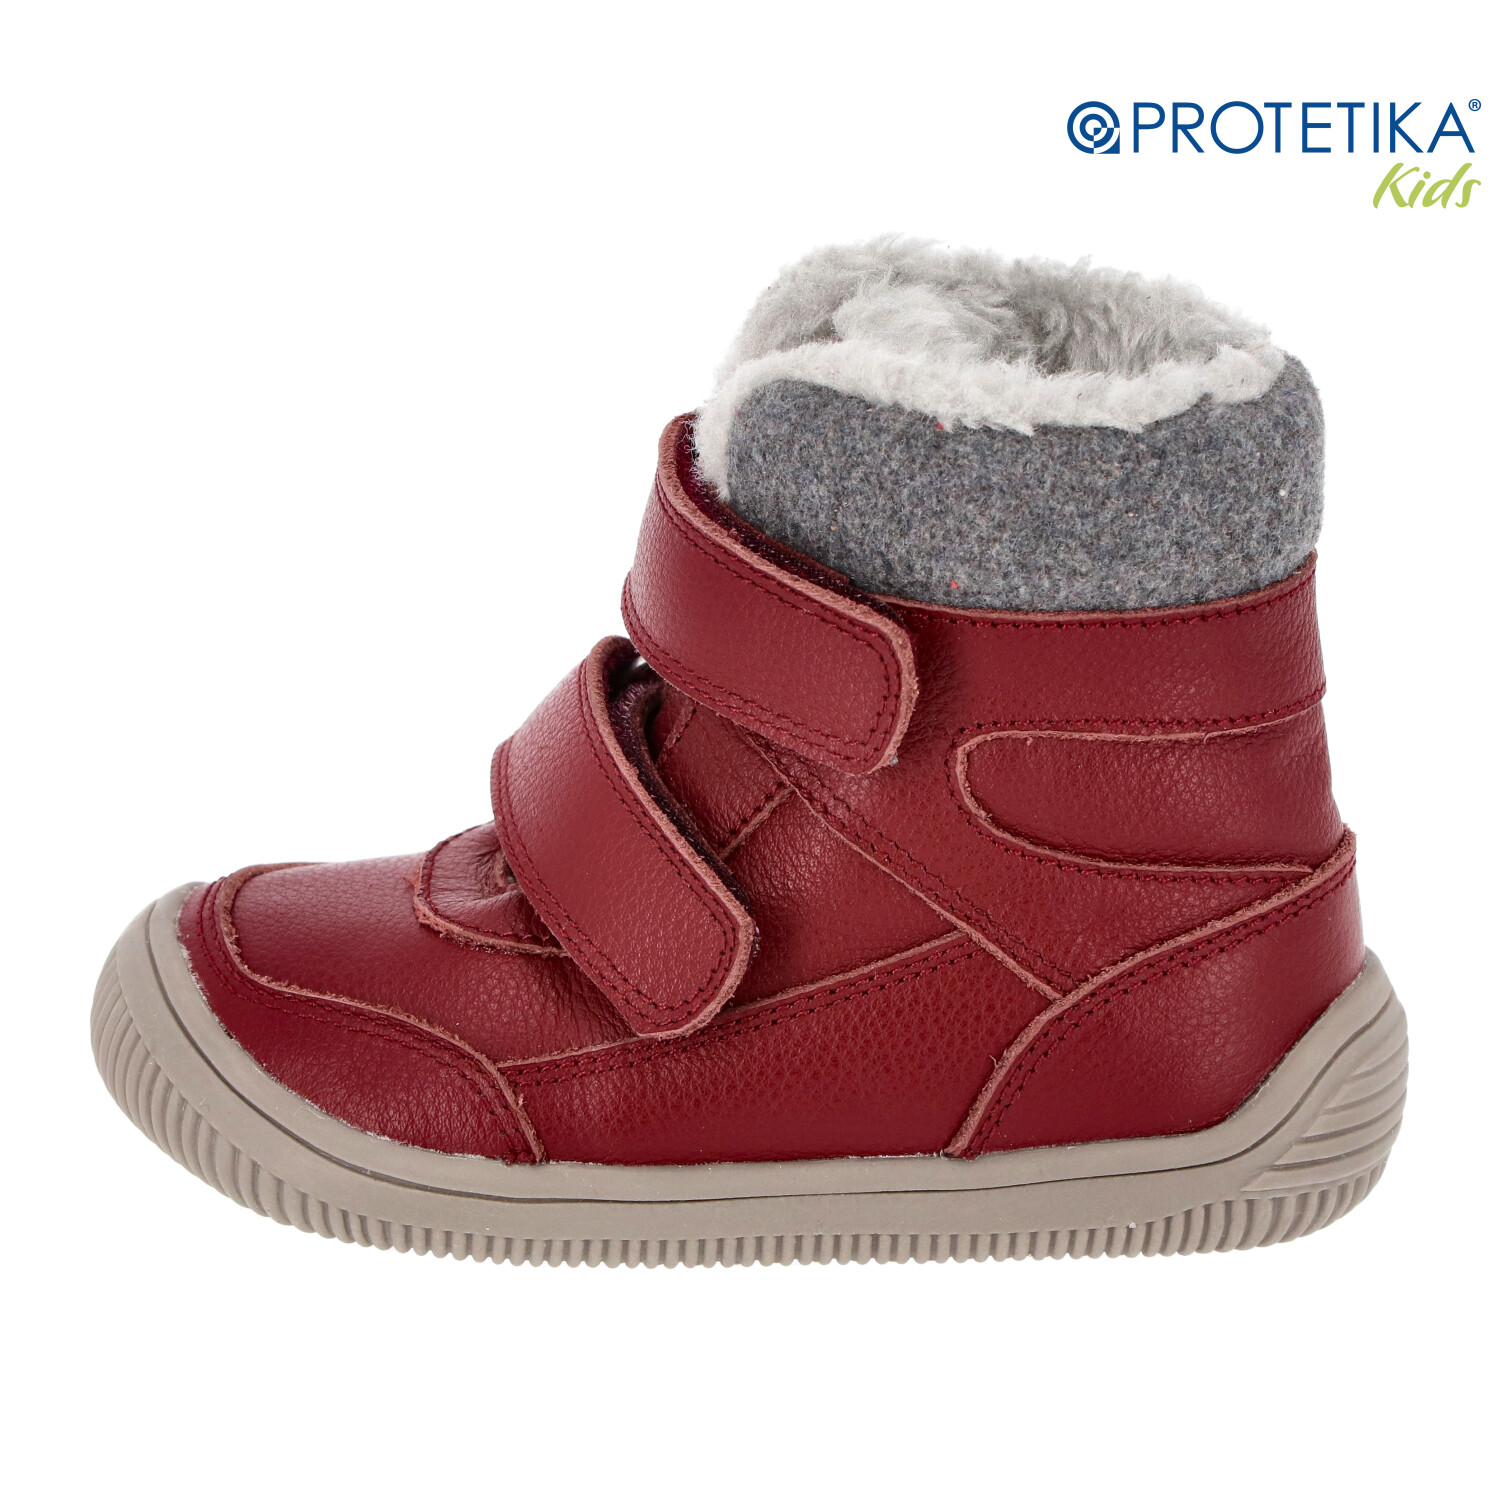 Protetika - zimné barefootové topánky TAMIRA bordo - zateplené kožušinkou